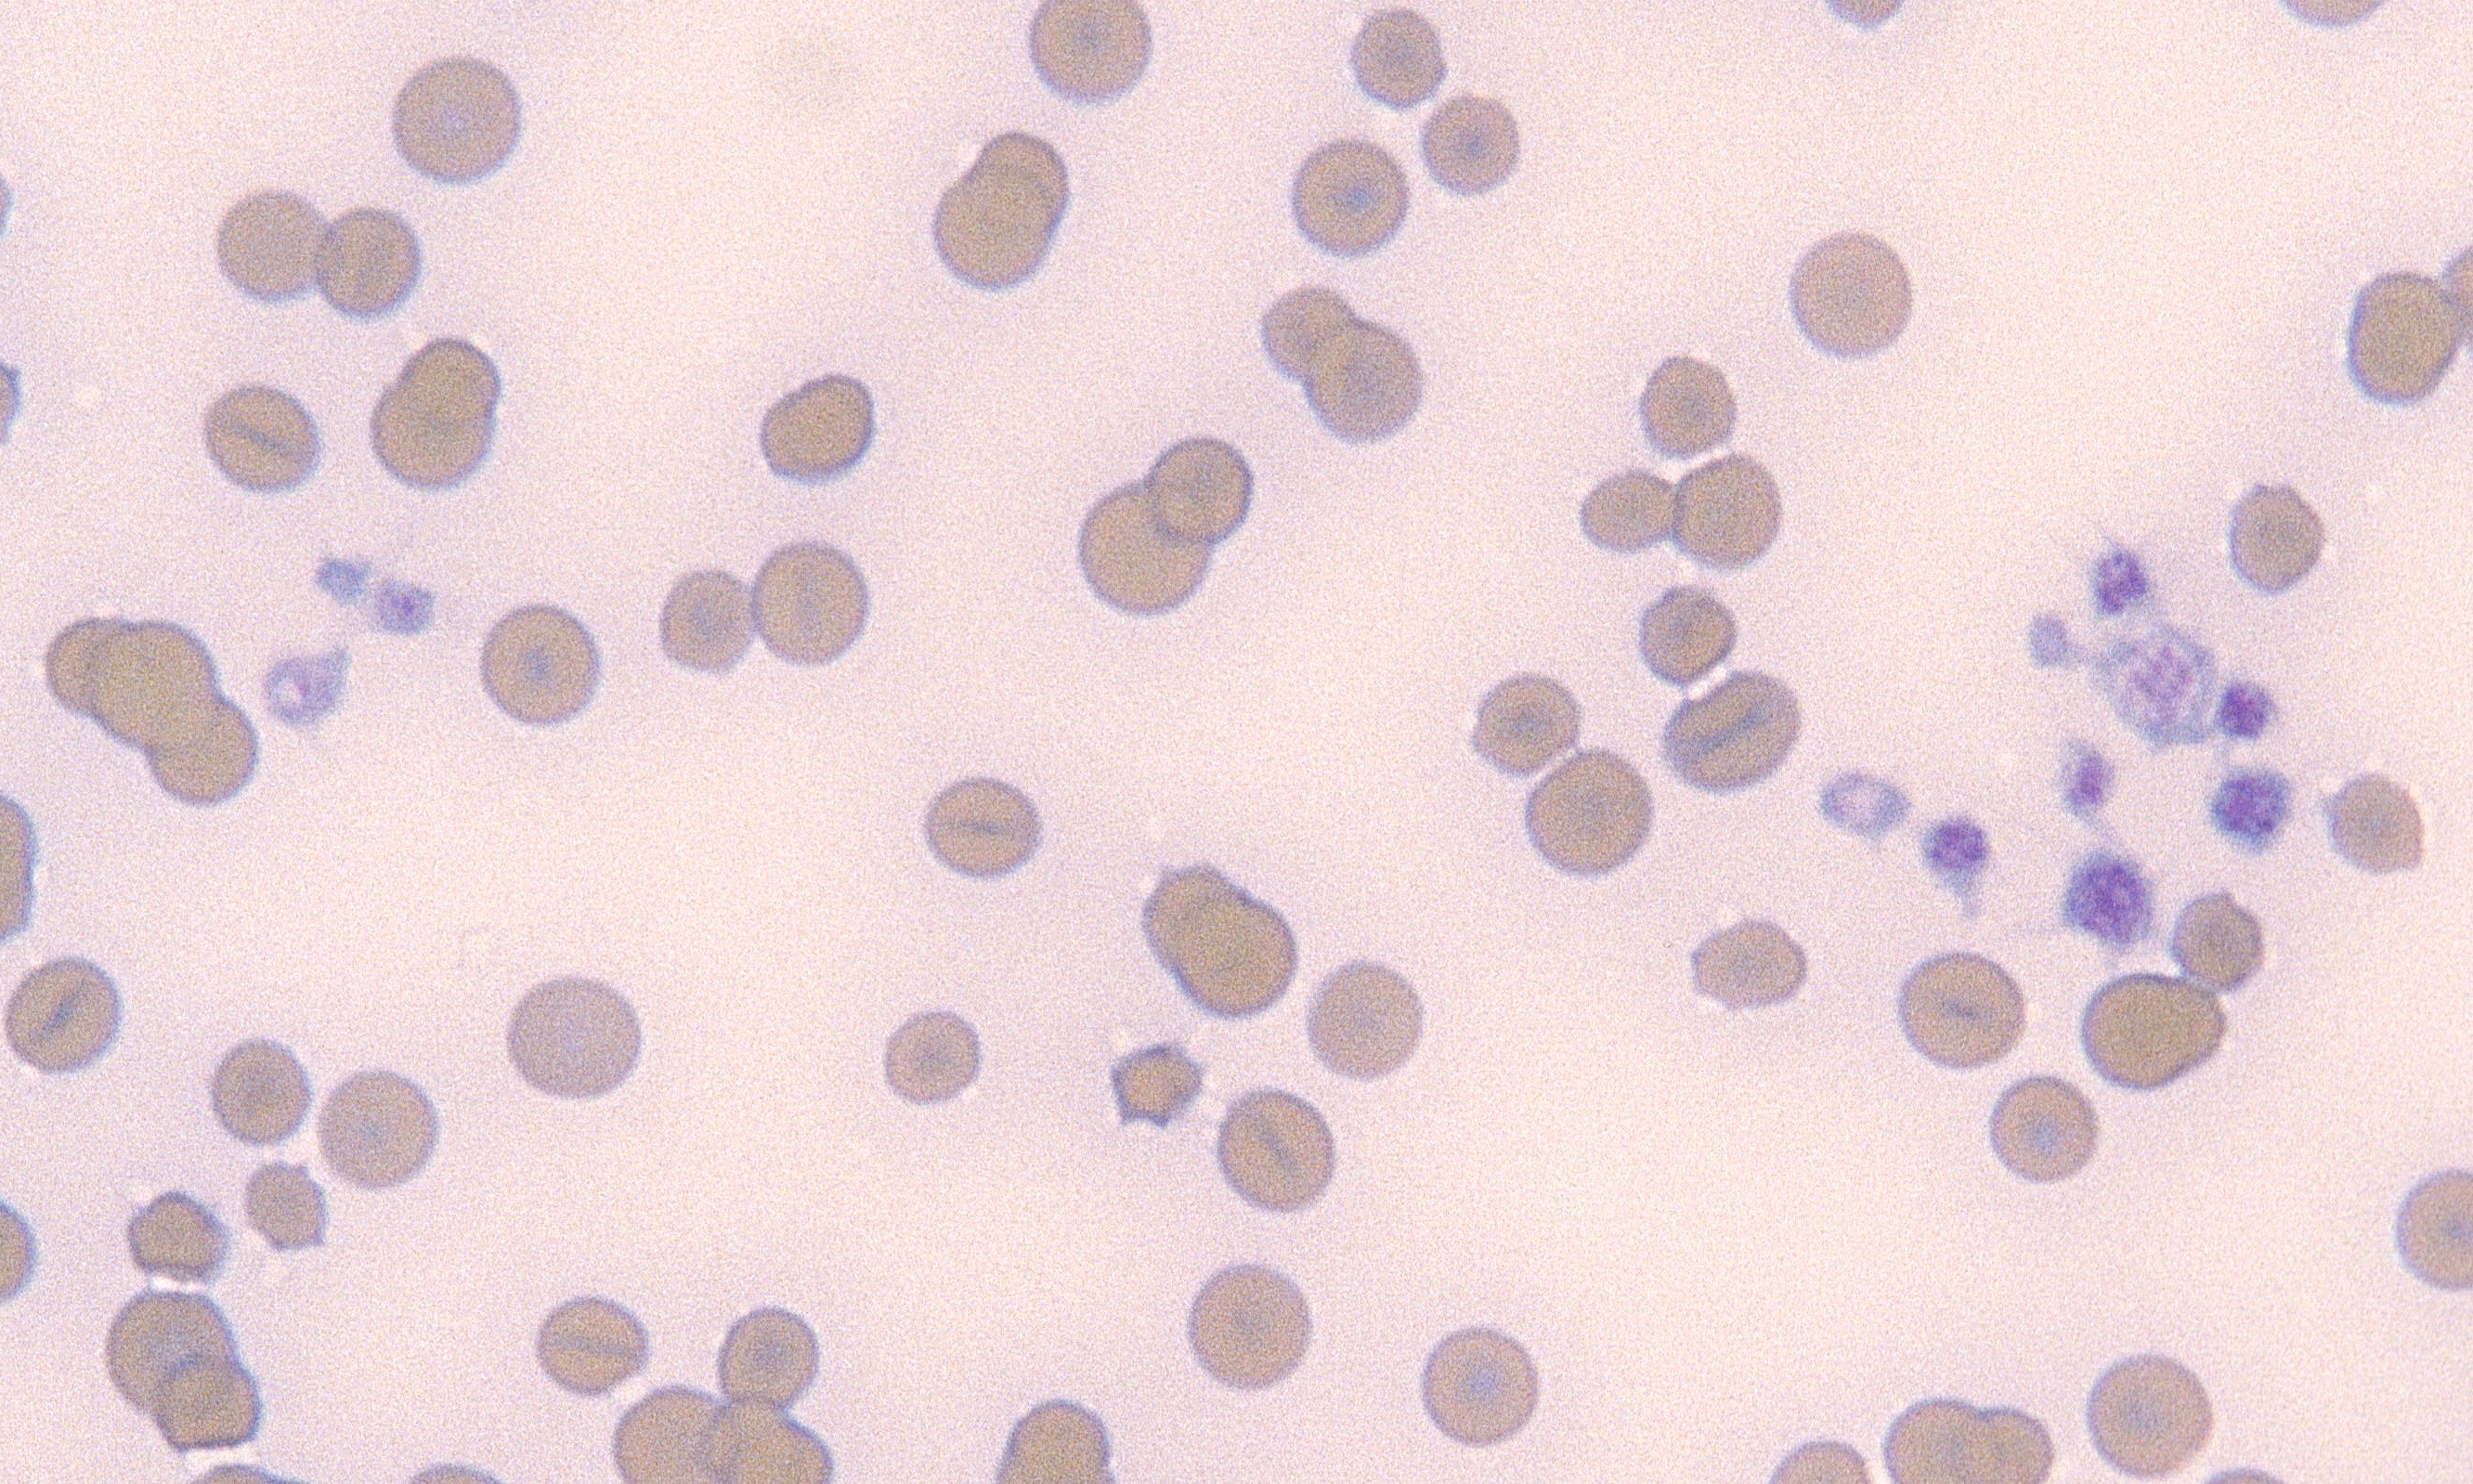 Platelets 7 (Feline 1)